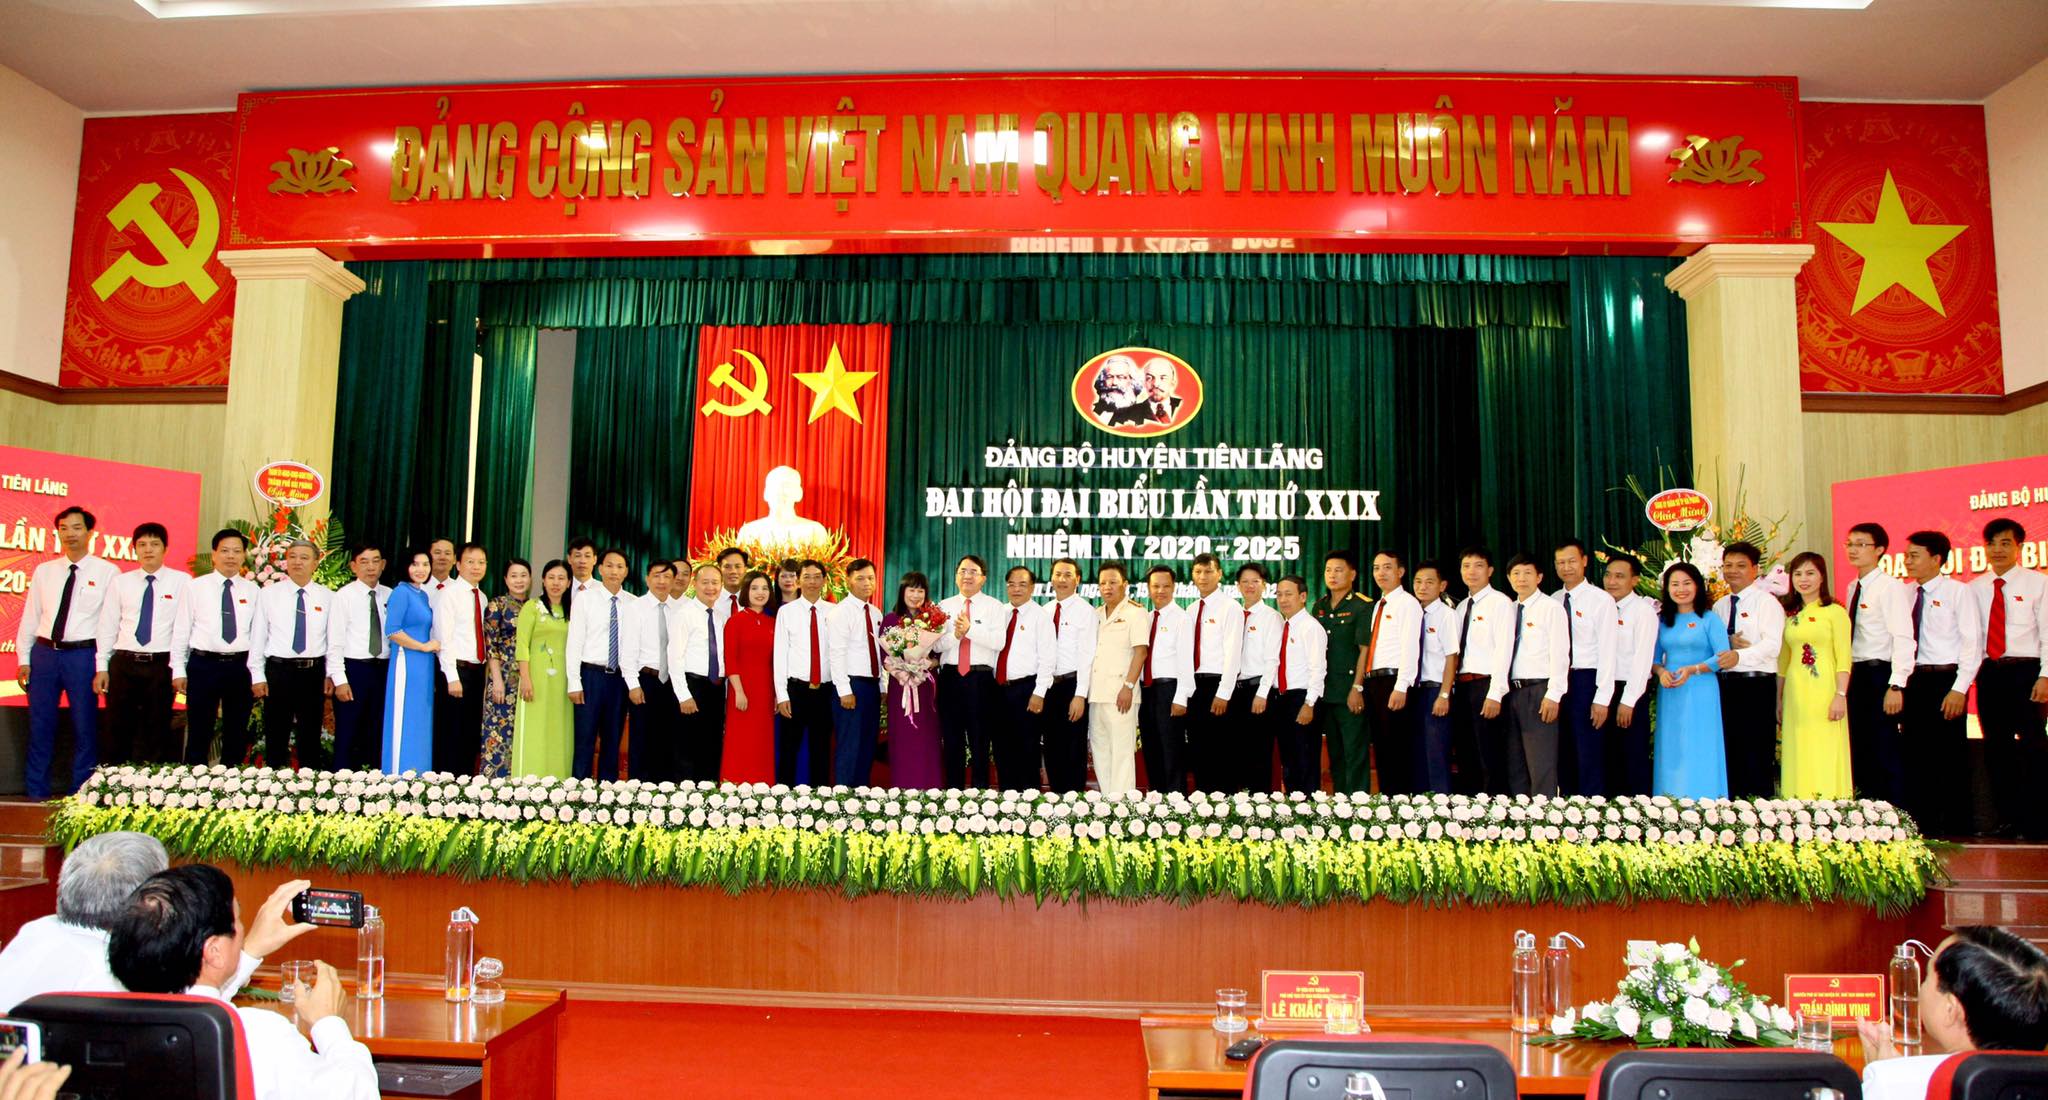 Đồng chí Lê Khắc Nam Phó chủ tịch UBND thành phố tặng hoa chúc mừng Ban Chấp hành hành Đảng bộ huyện Tiên Lãng nhiệm kỳ 2020-2025.